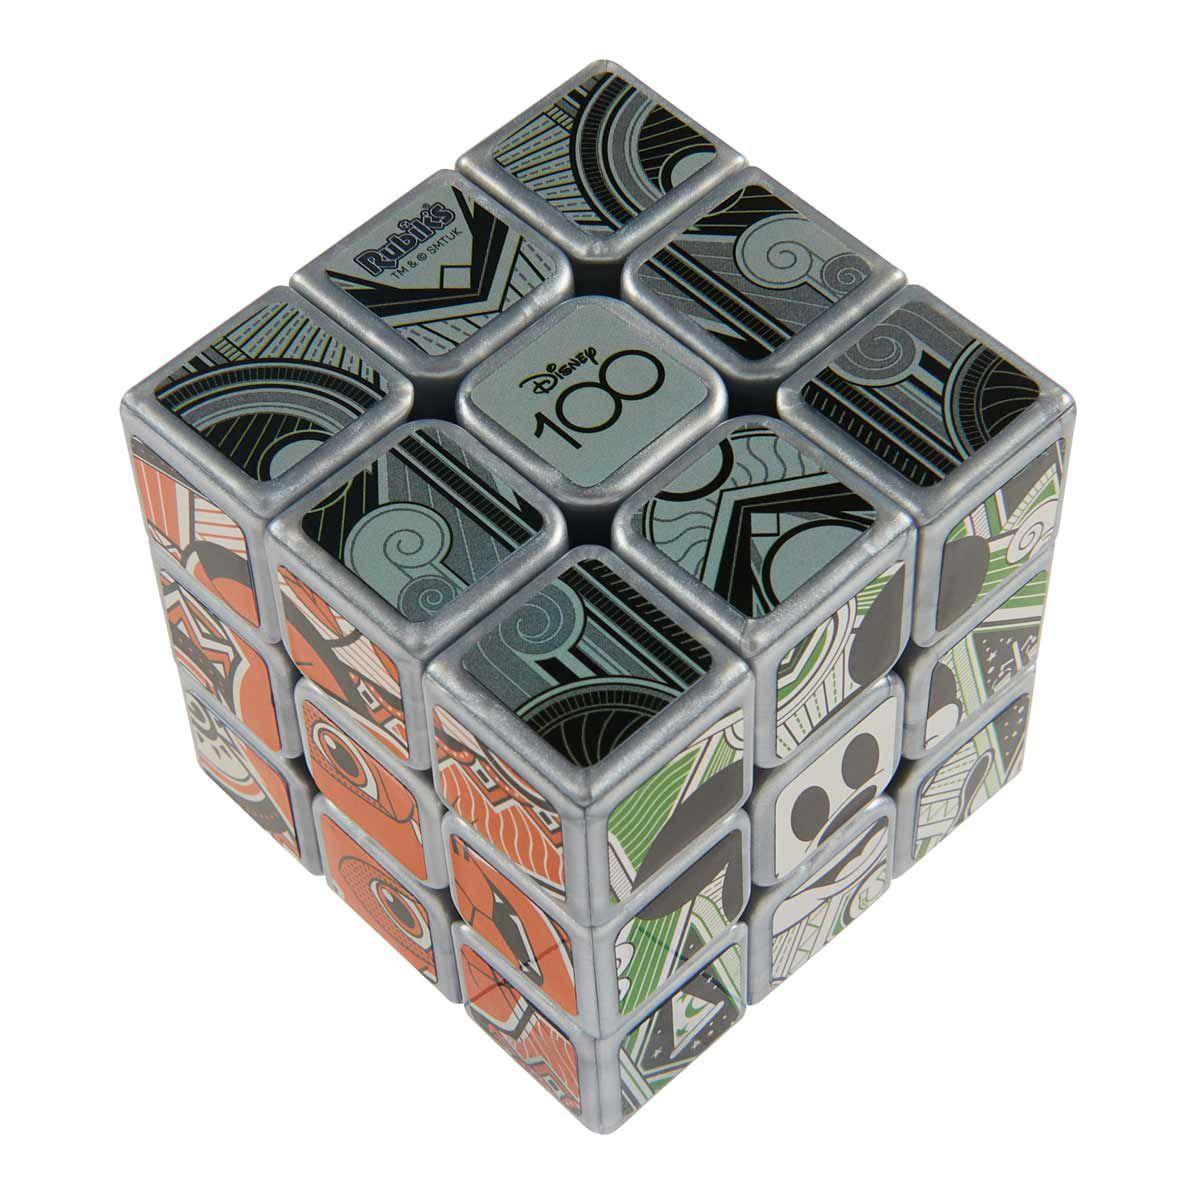 Compre Rubik's - Cubo Mágico Platinum 3x3 da Disney 100 Aniversário aqui na  Sunny Brinquedos.